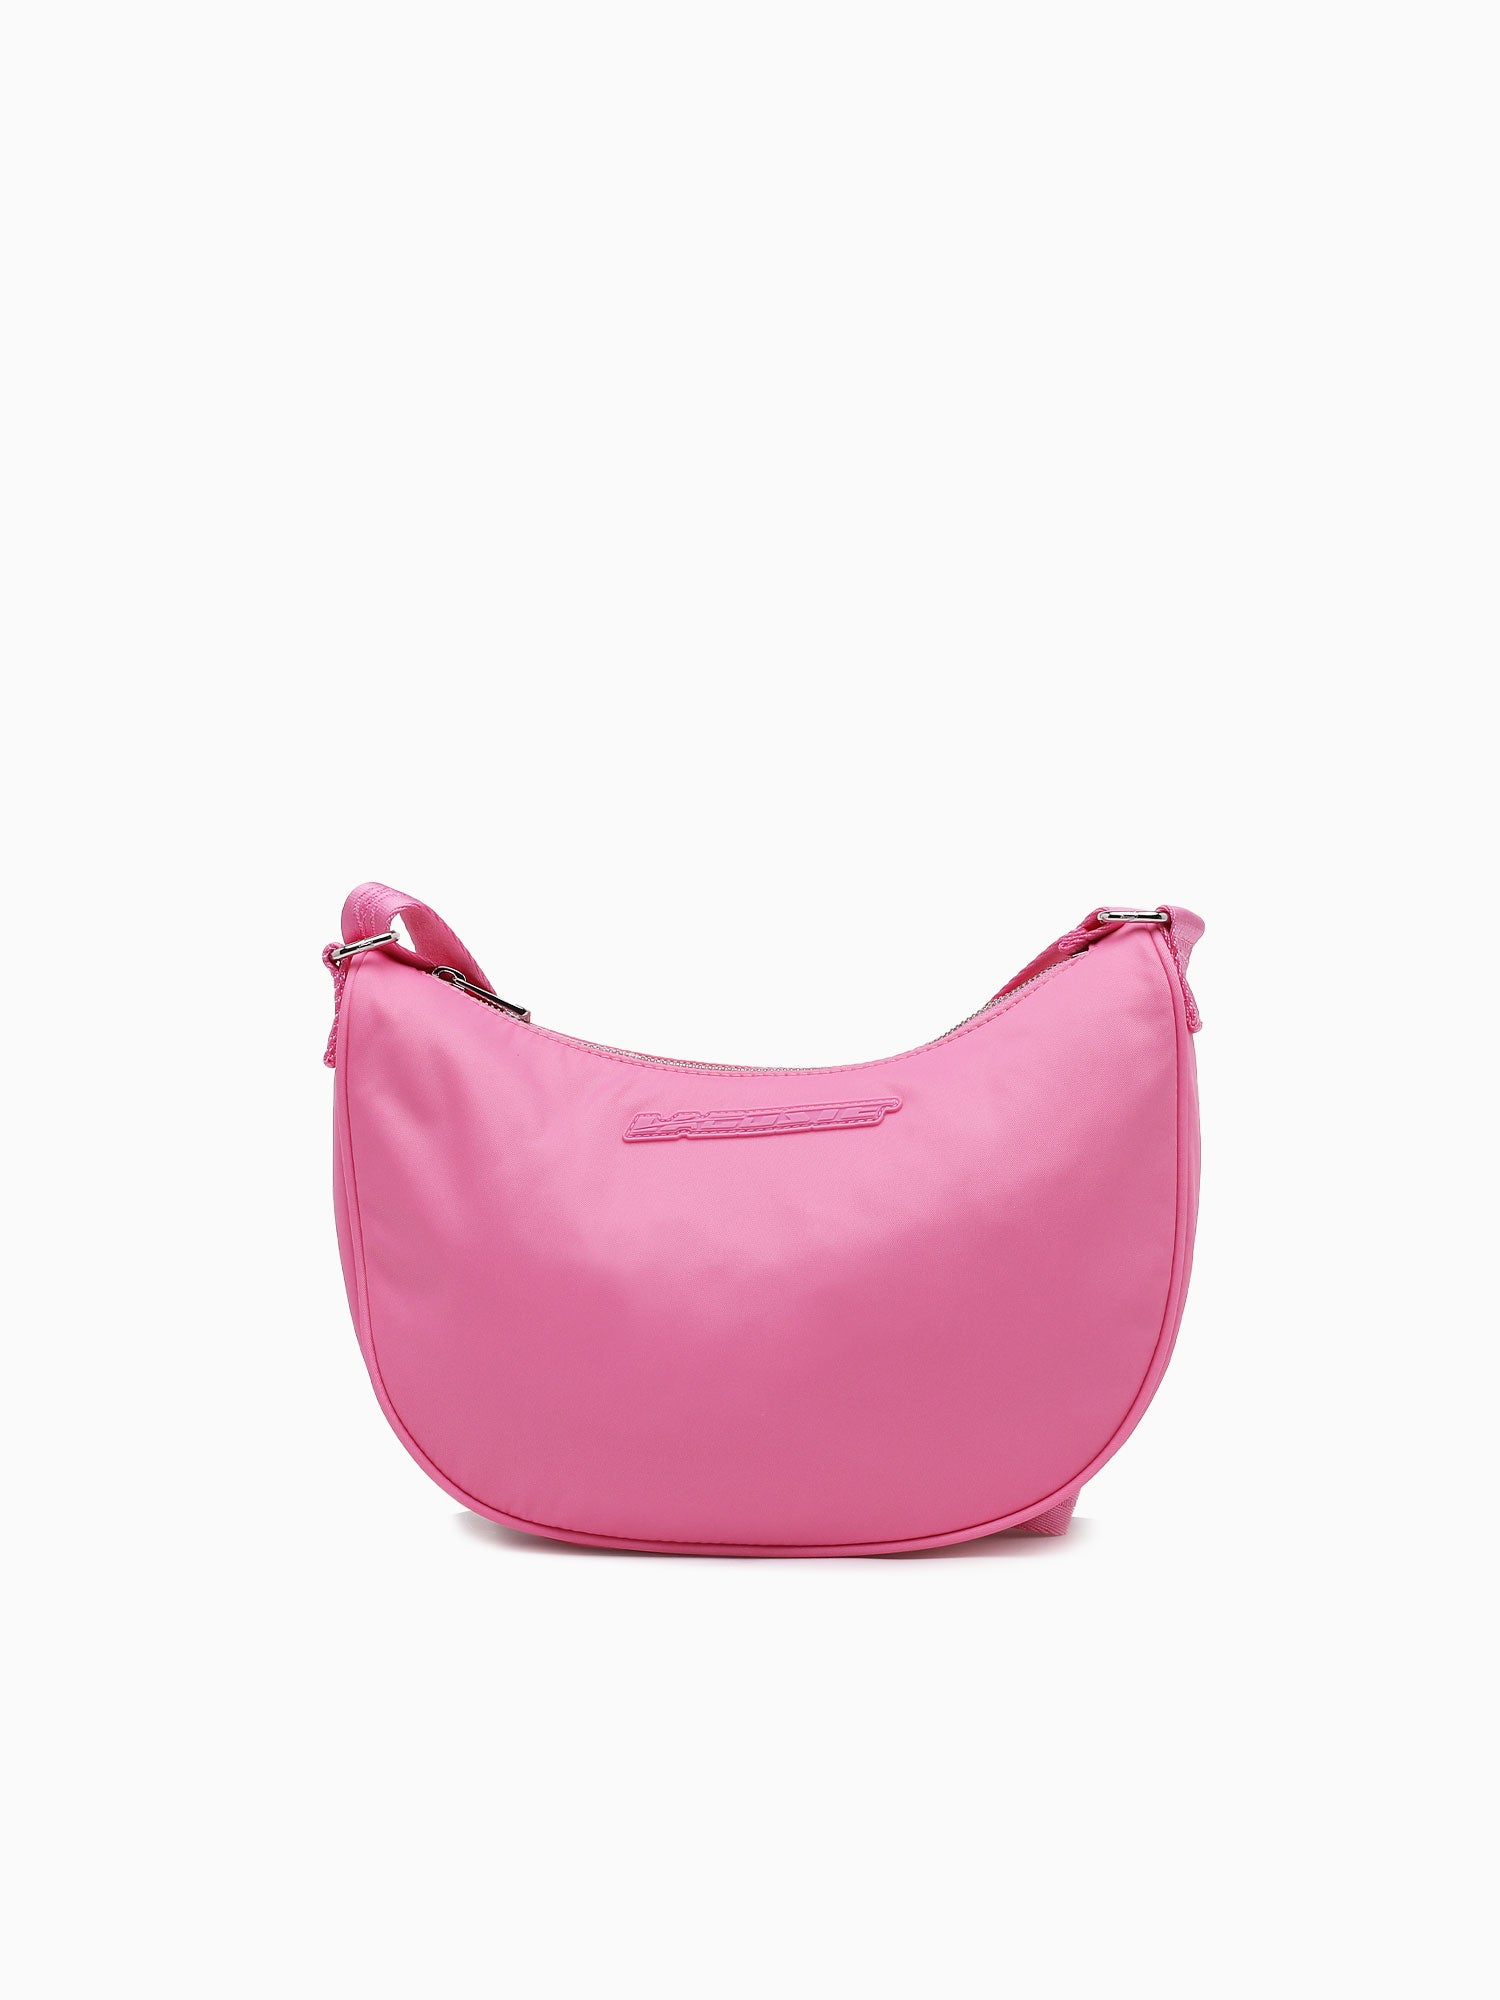 Branded Shoulder Bag M00 Wild Rose Pink